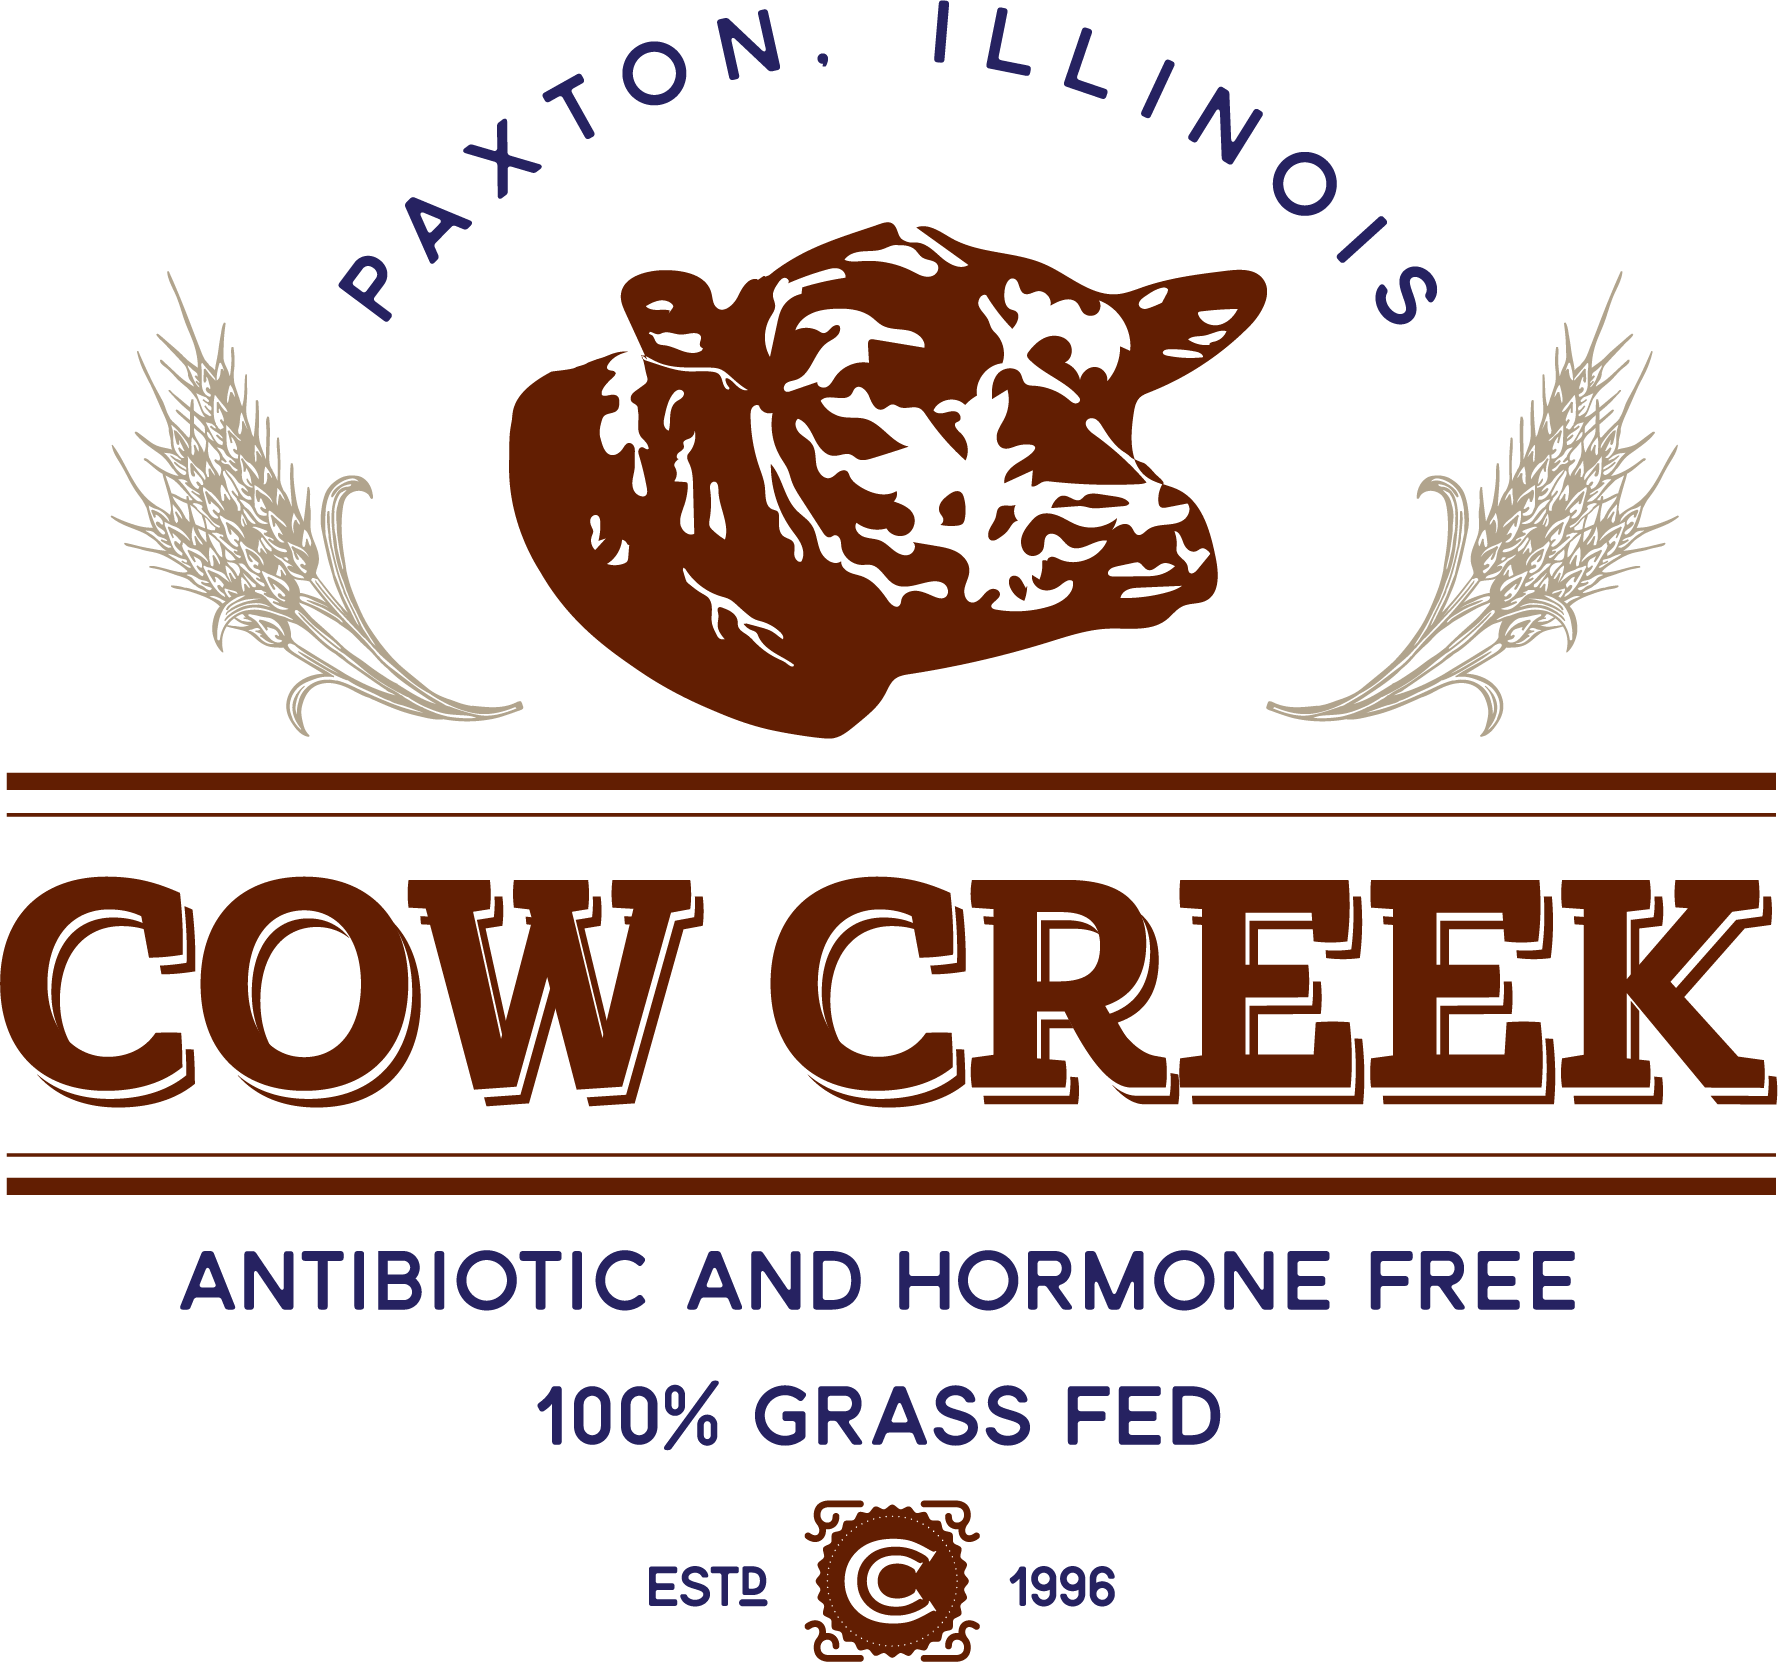 Cow Creek Farm